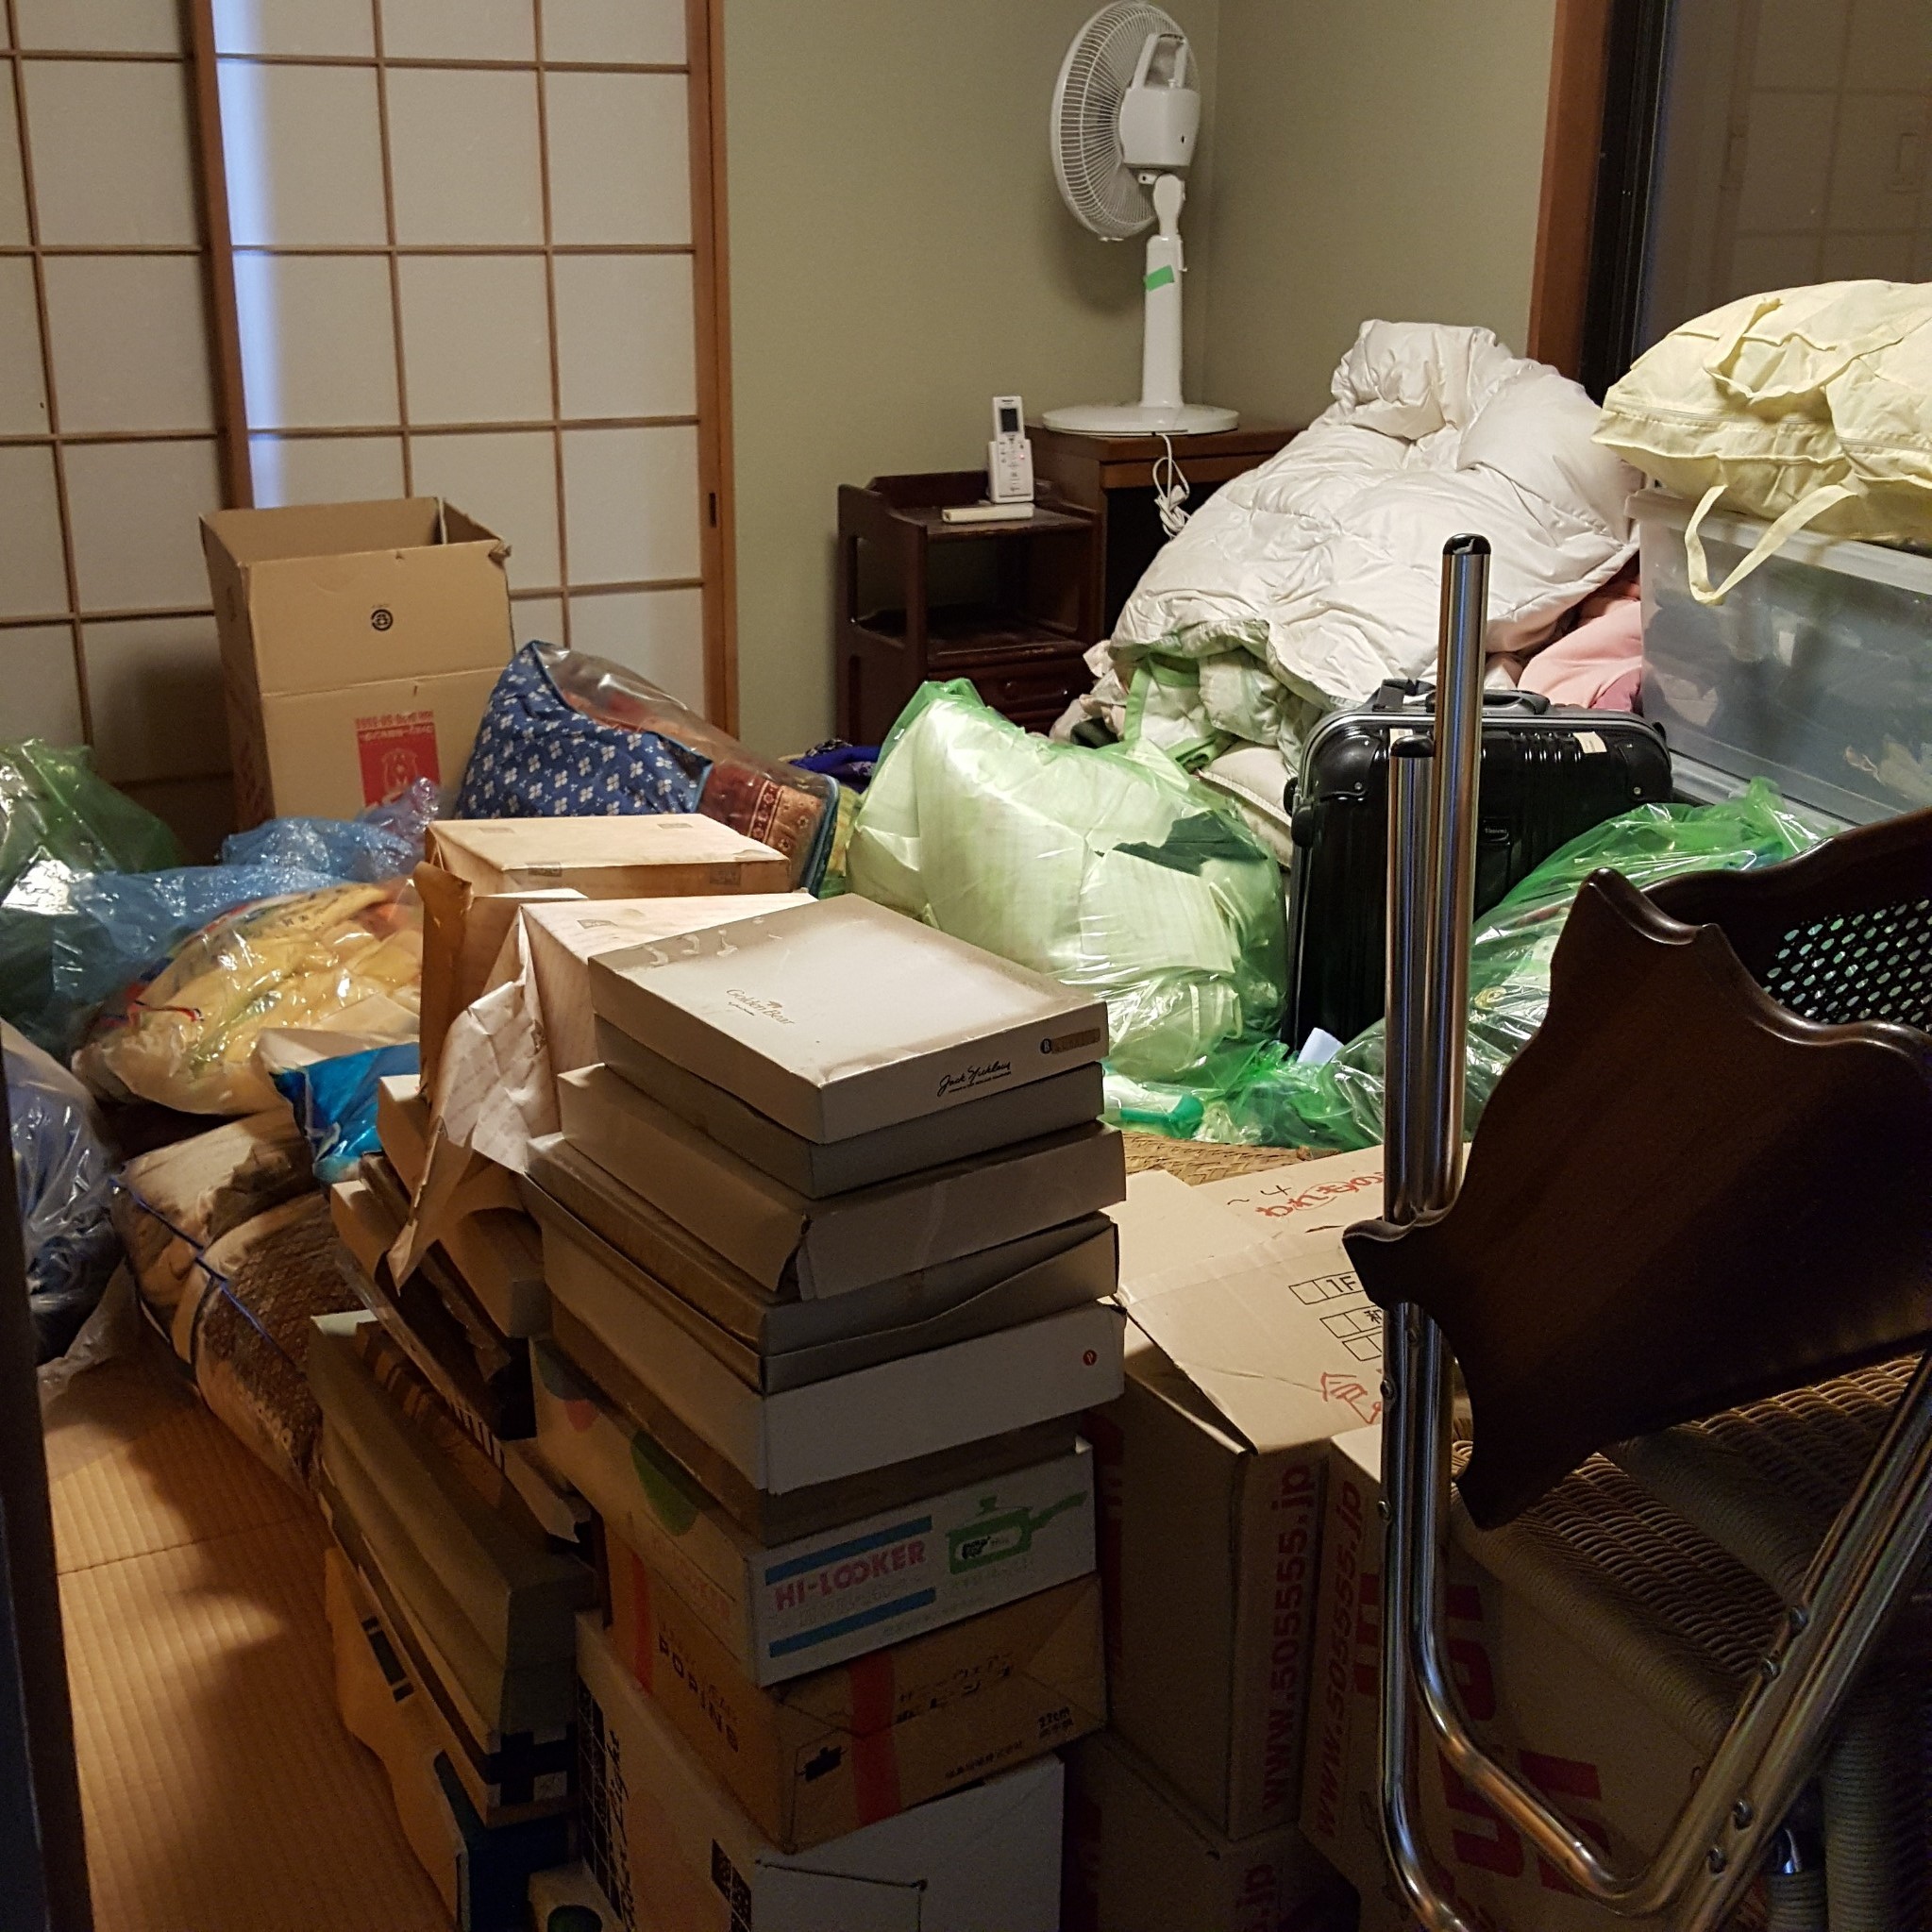 神奈川県横浜市 一戸建て屋根裏部屋の整理整頓と不要品回収